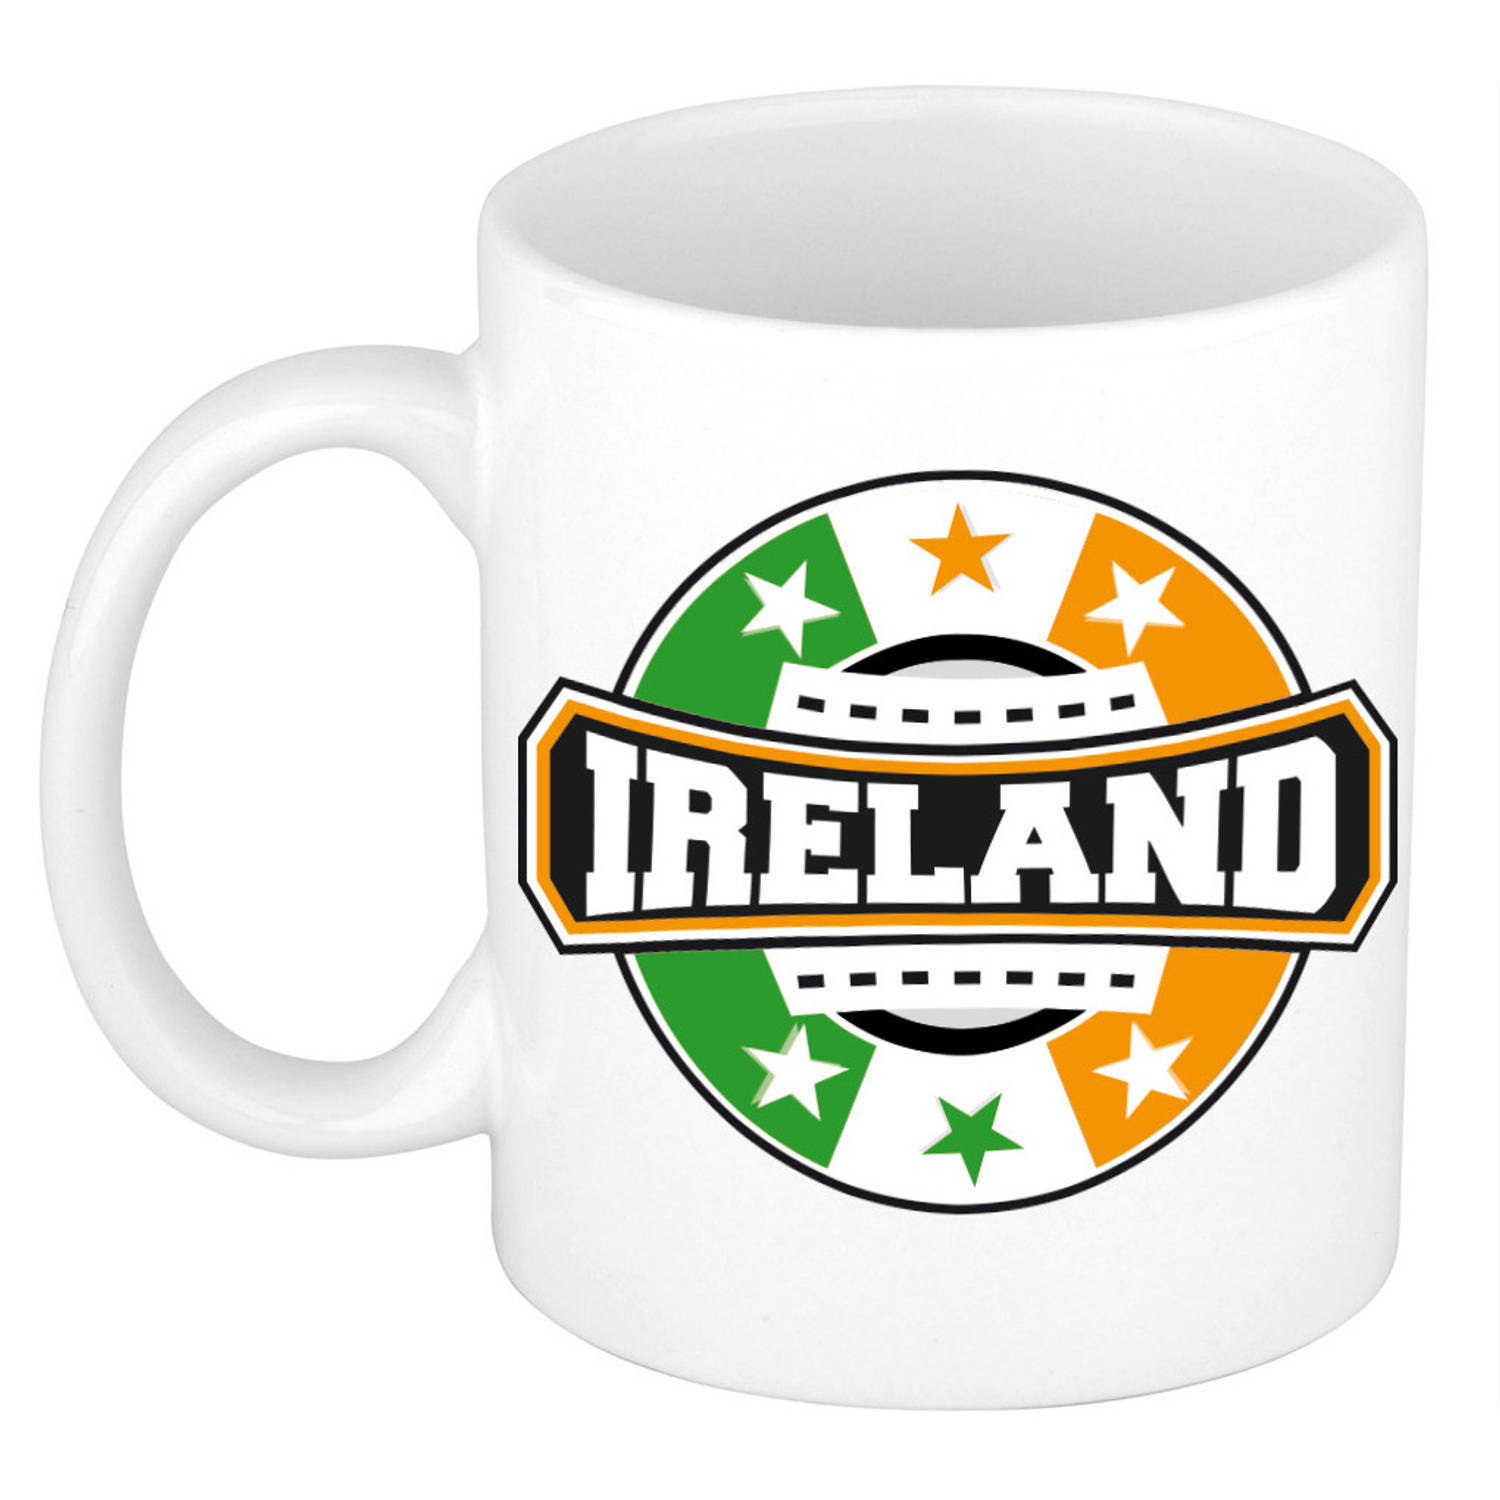 Ireland / Ierland logo supporters mok / beker 300 ml - feest mokken